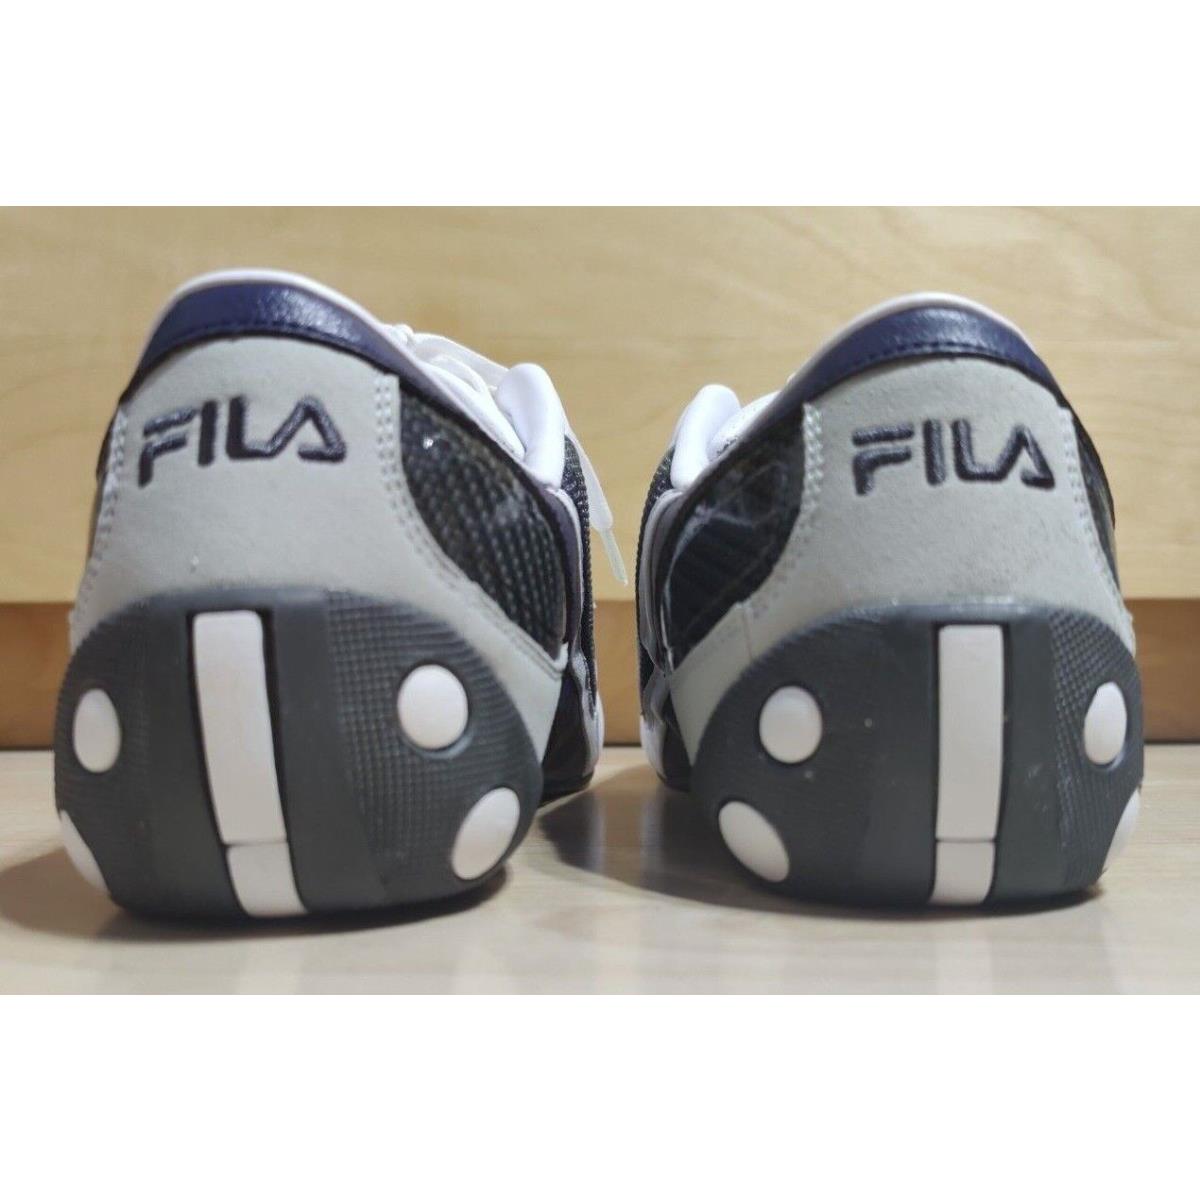 Fila shoes Honda Team - White/Blue 2